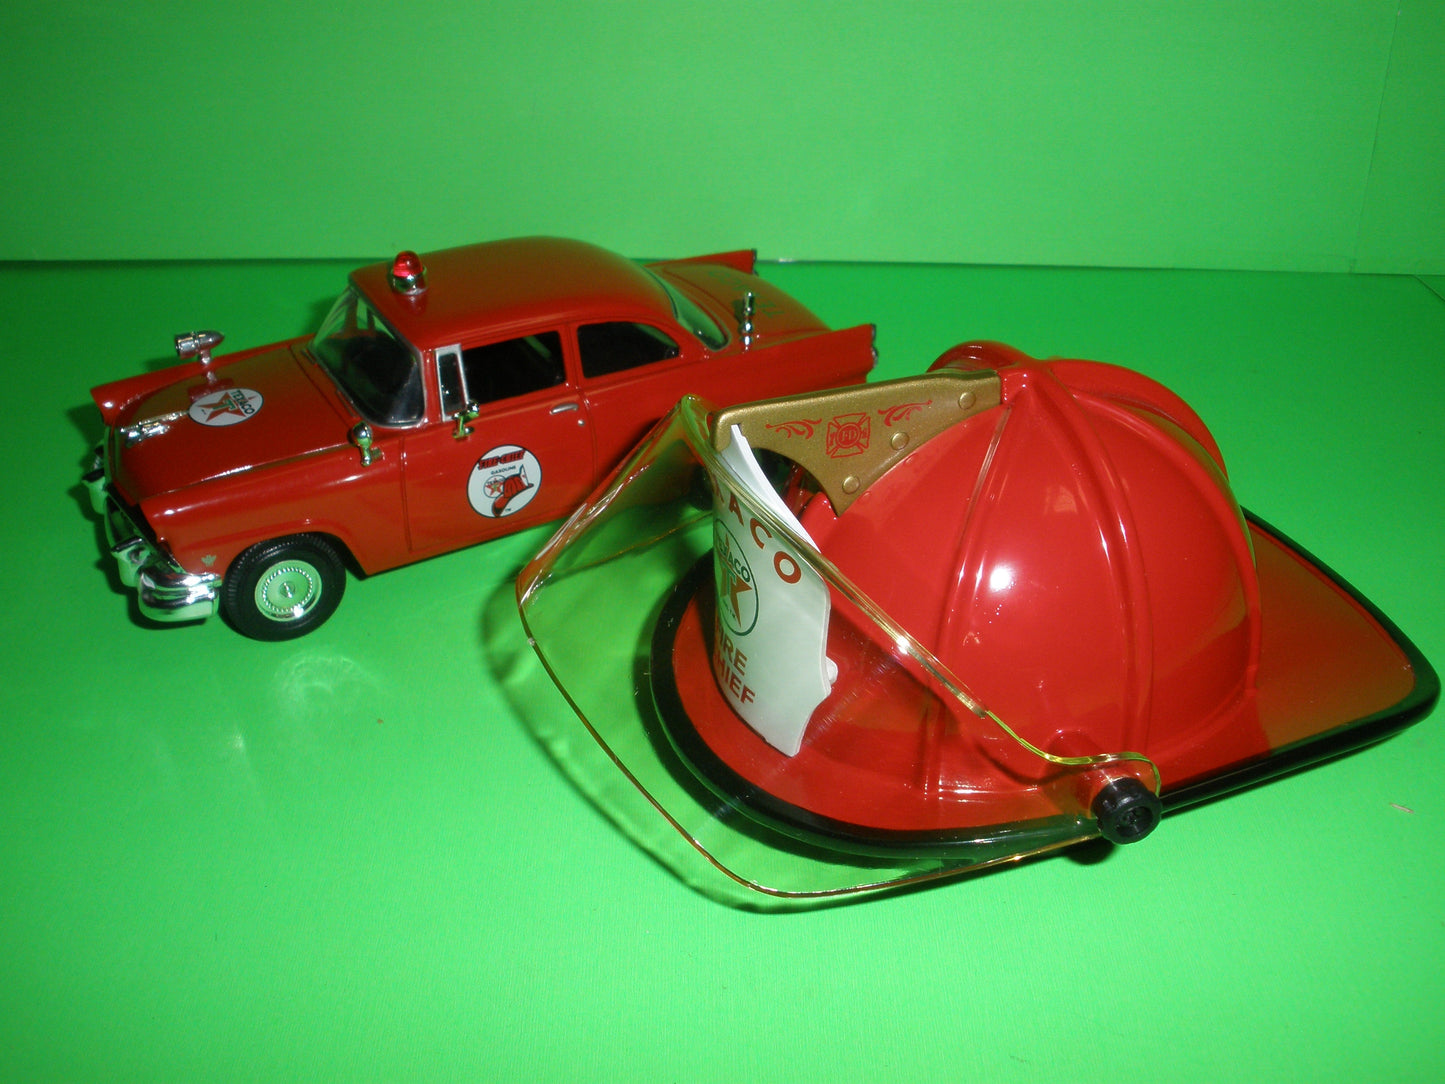 Texaco Fire Chief Helmet & 1956 Ford 2-Door